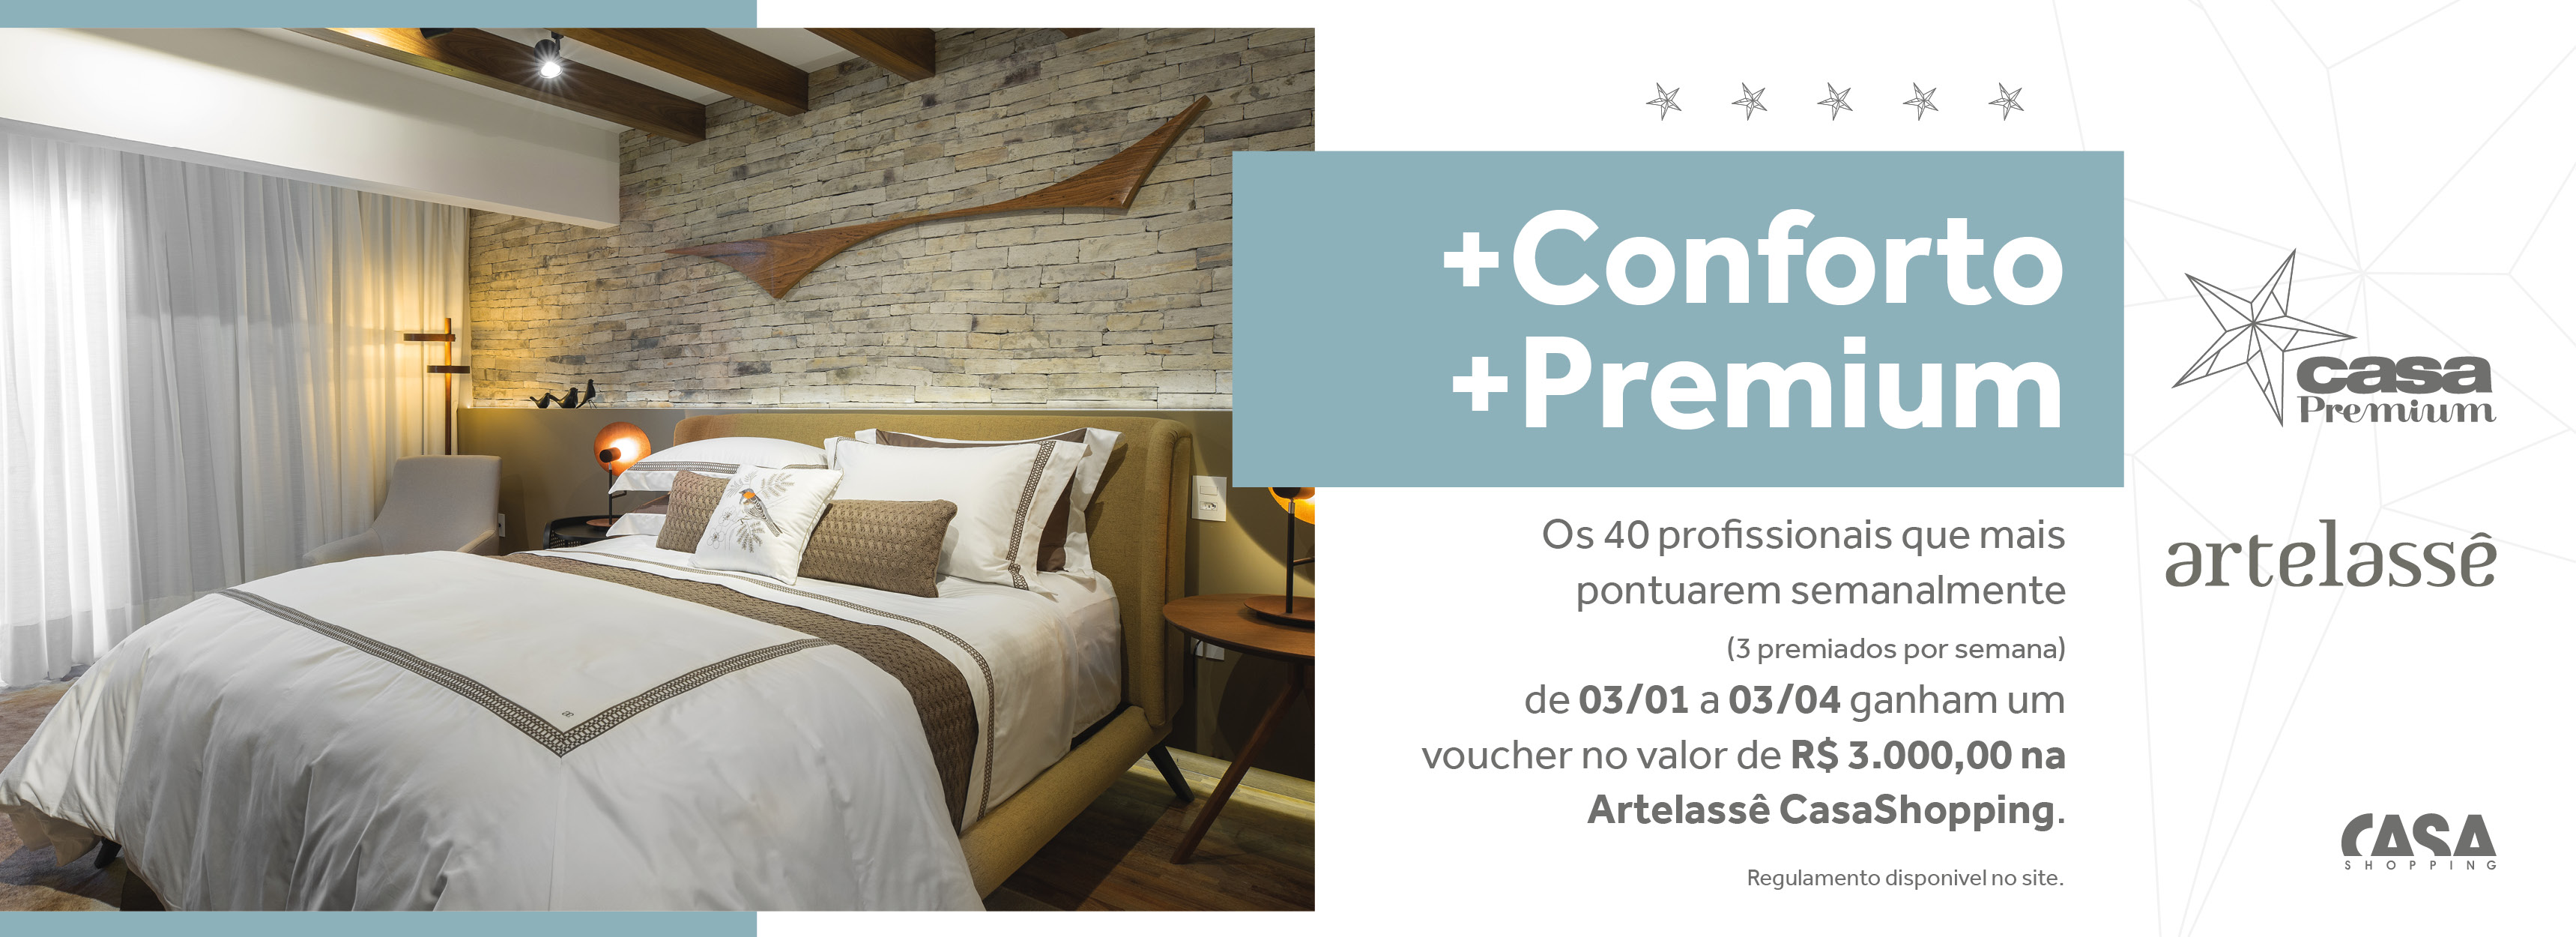 +Conforto +Premium - Artelassê